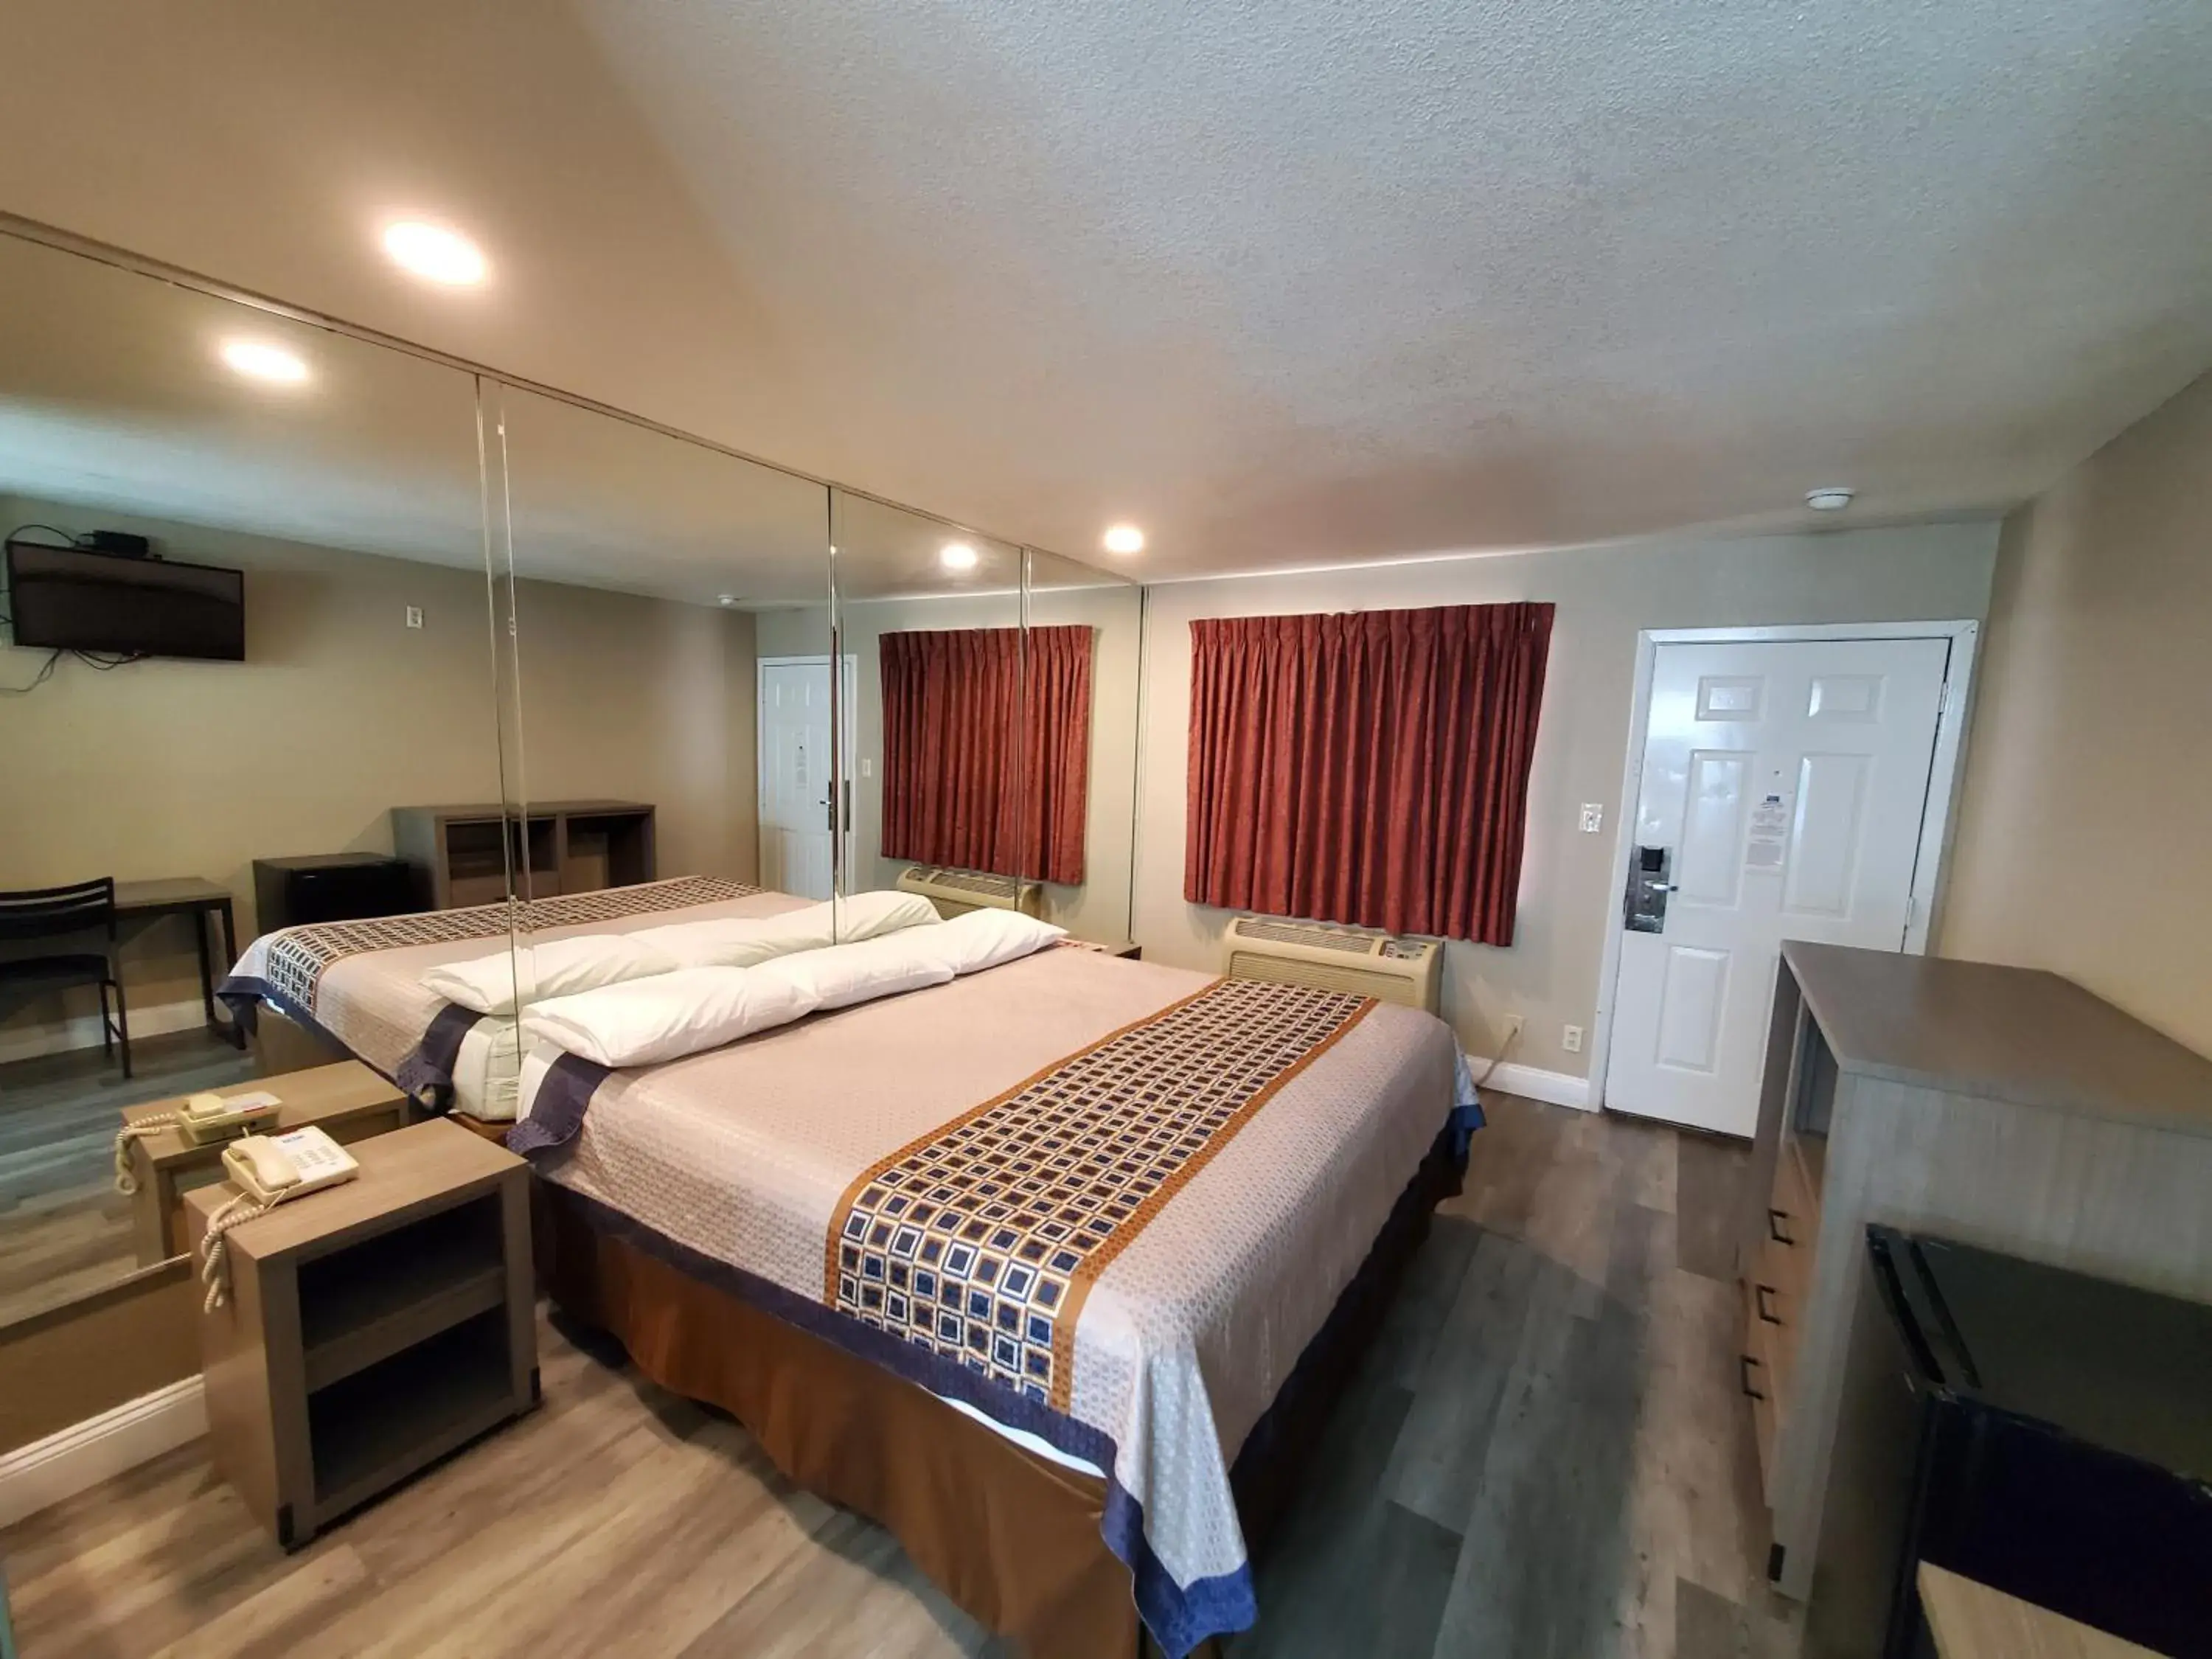 Bedroom, Bed in River Inn Motel